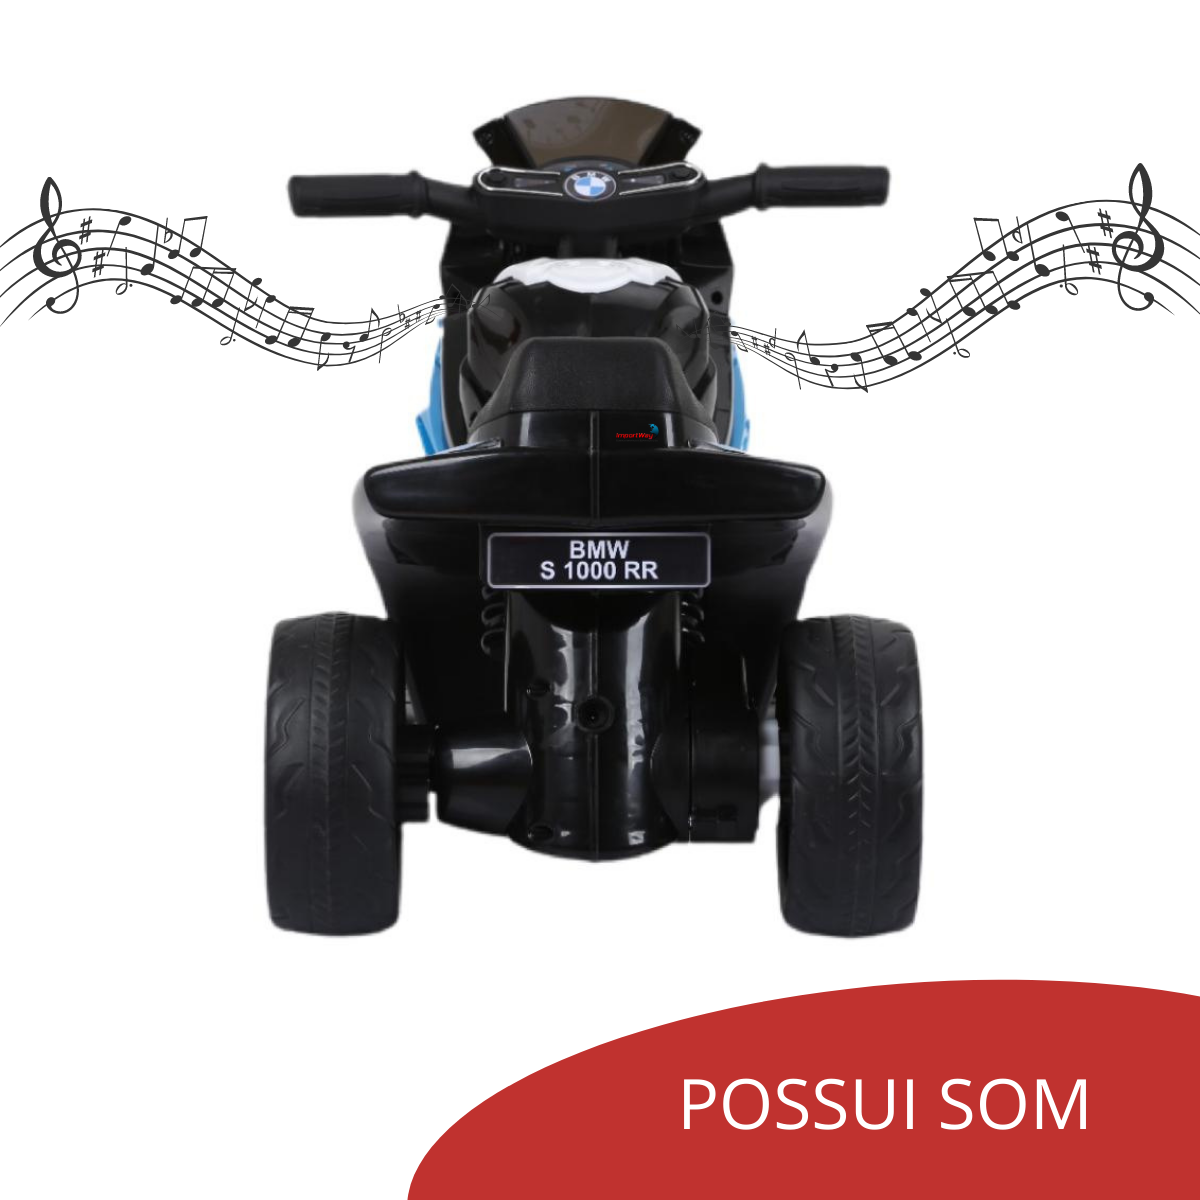 Mini Moto Elétrica Infantil De Criança 6v Até 25 Kg Azul Com Rodas De Apoio  Velocidade Máxima 3km/h - Auto Equip